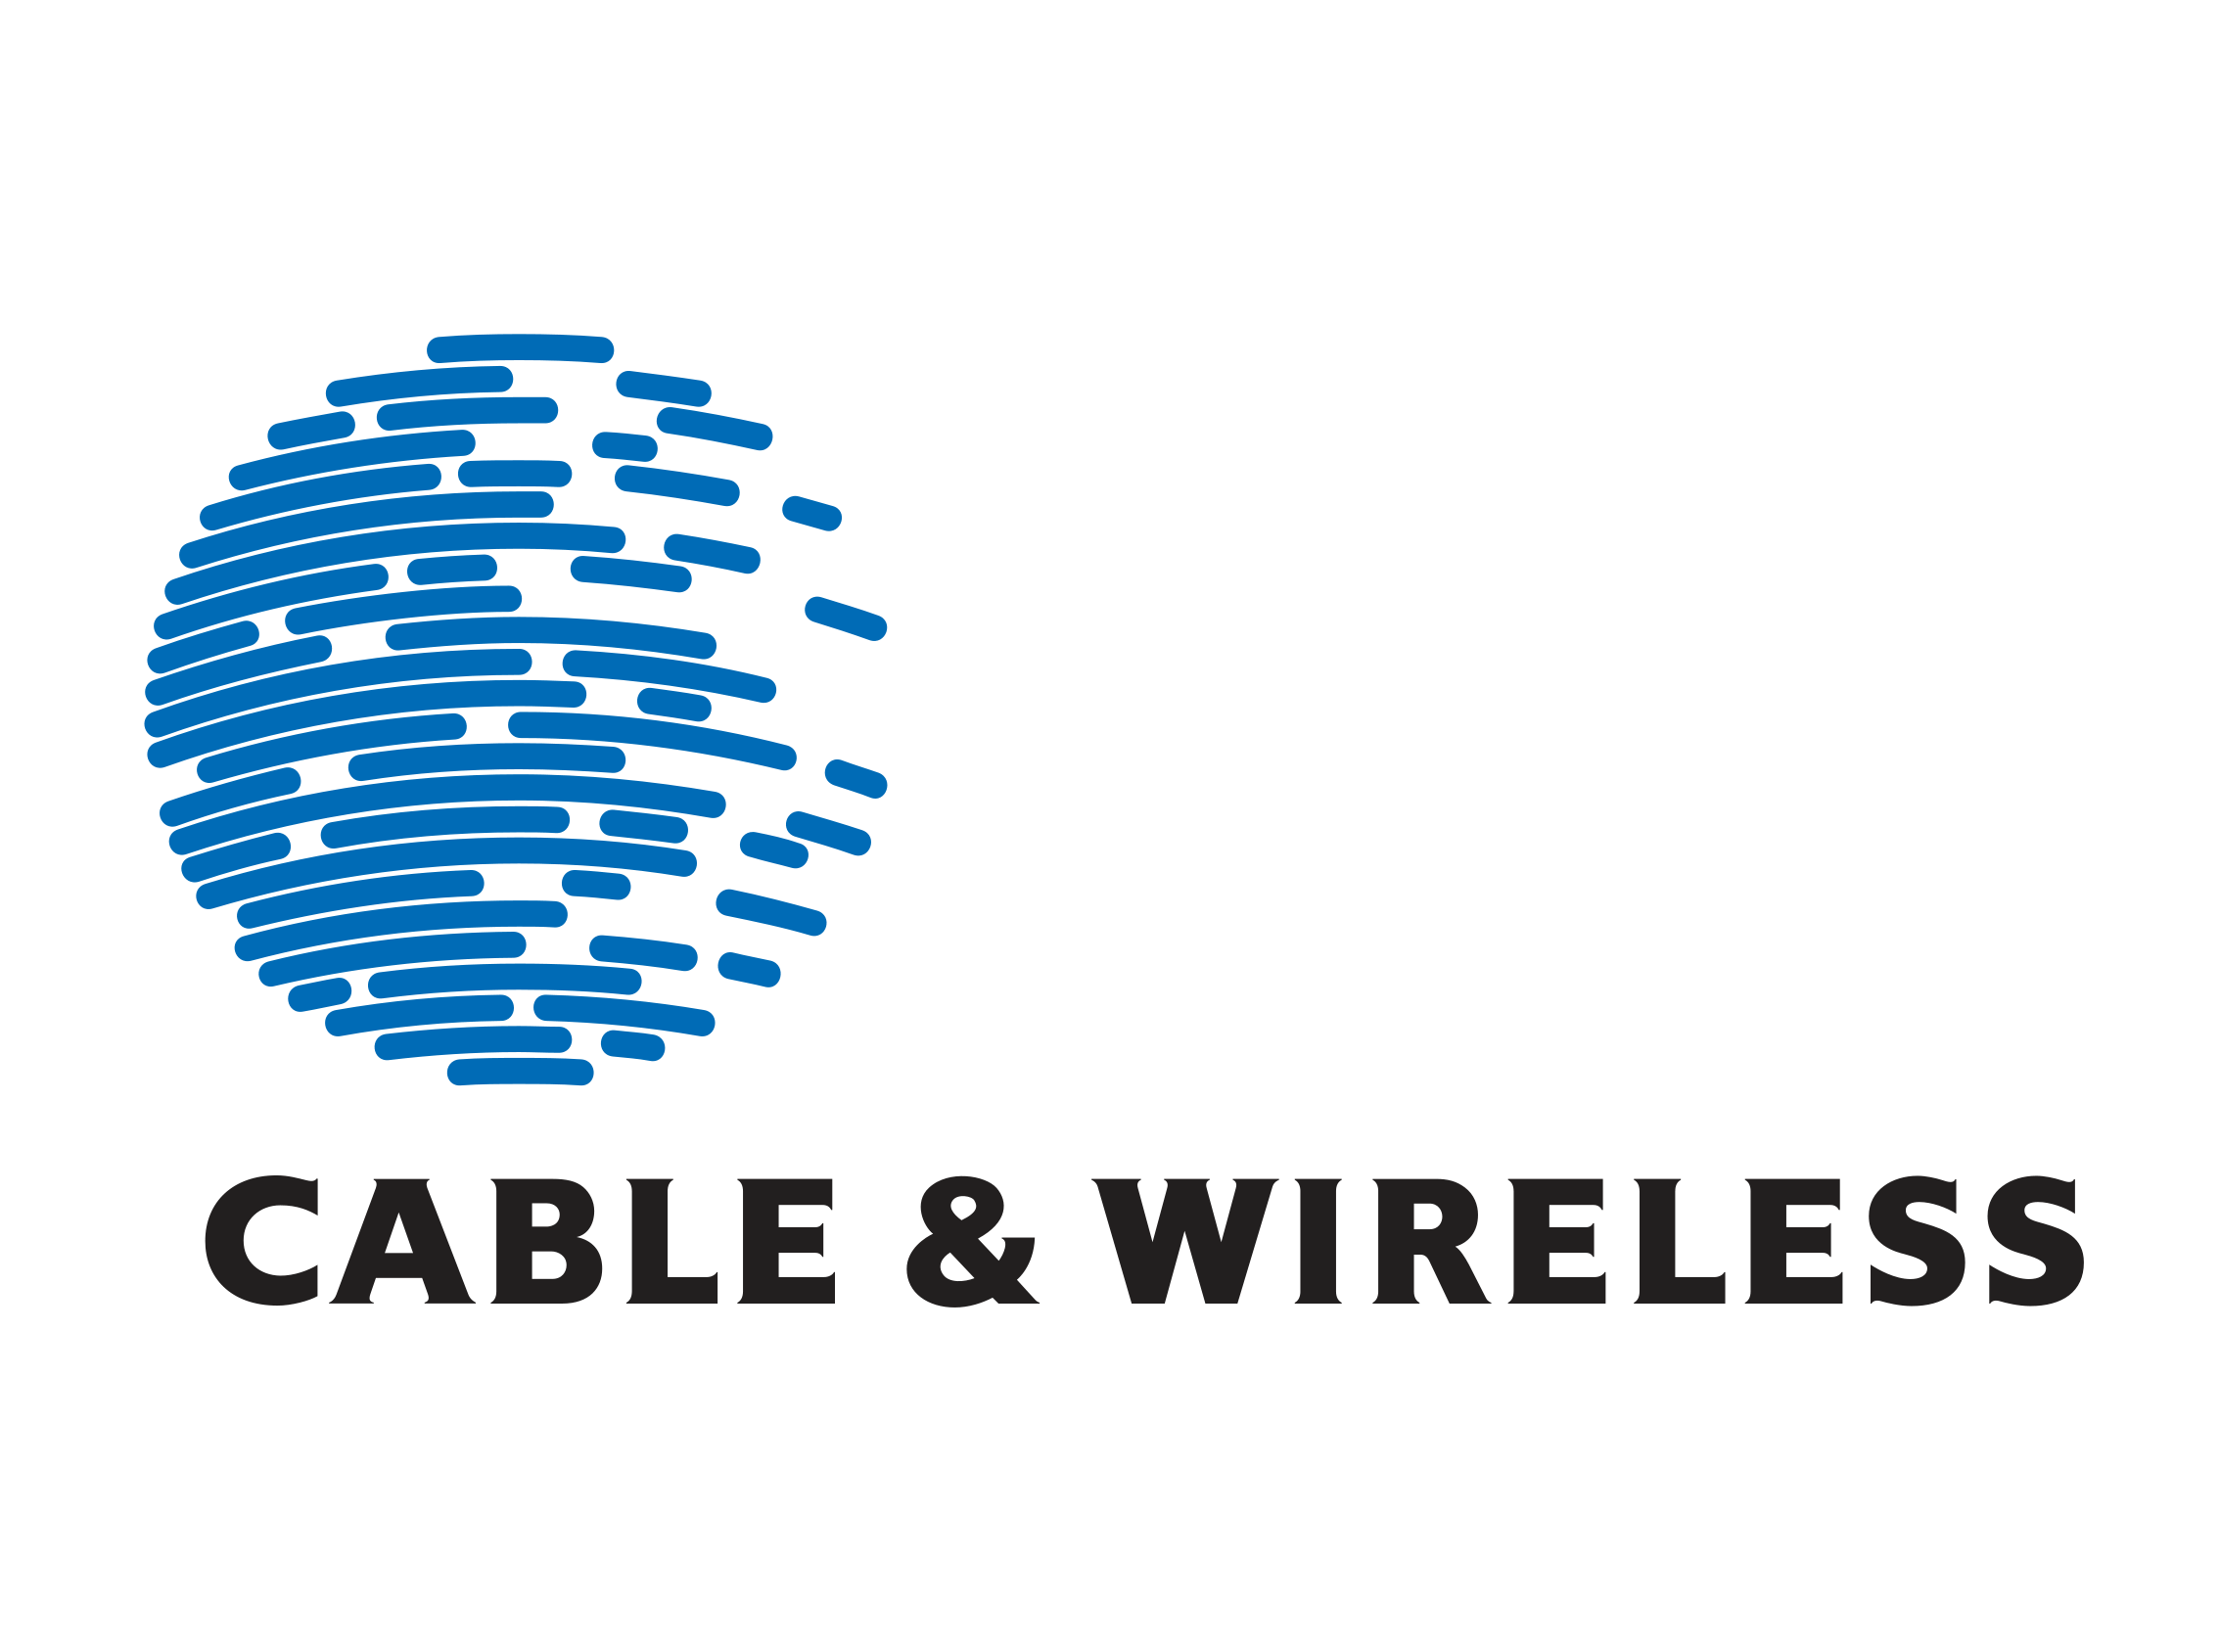 Wireless Communications Logo - Cable & Wireless logo | Logok